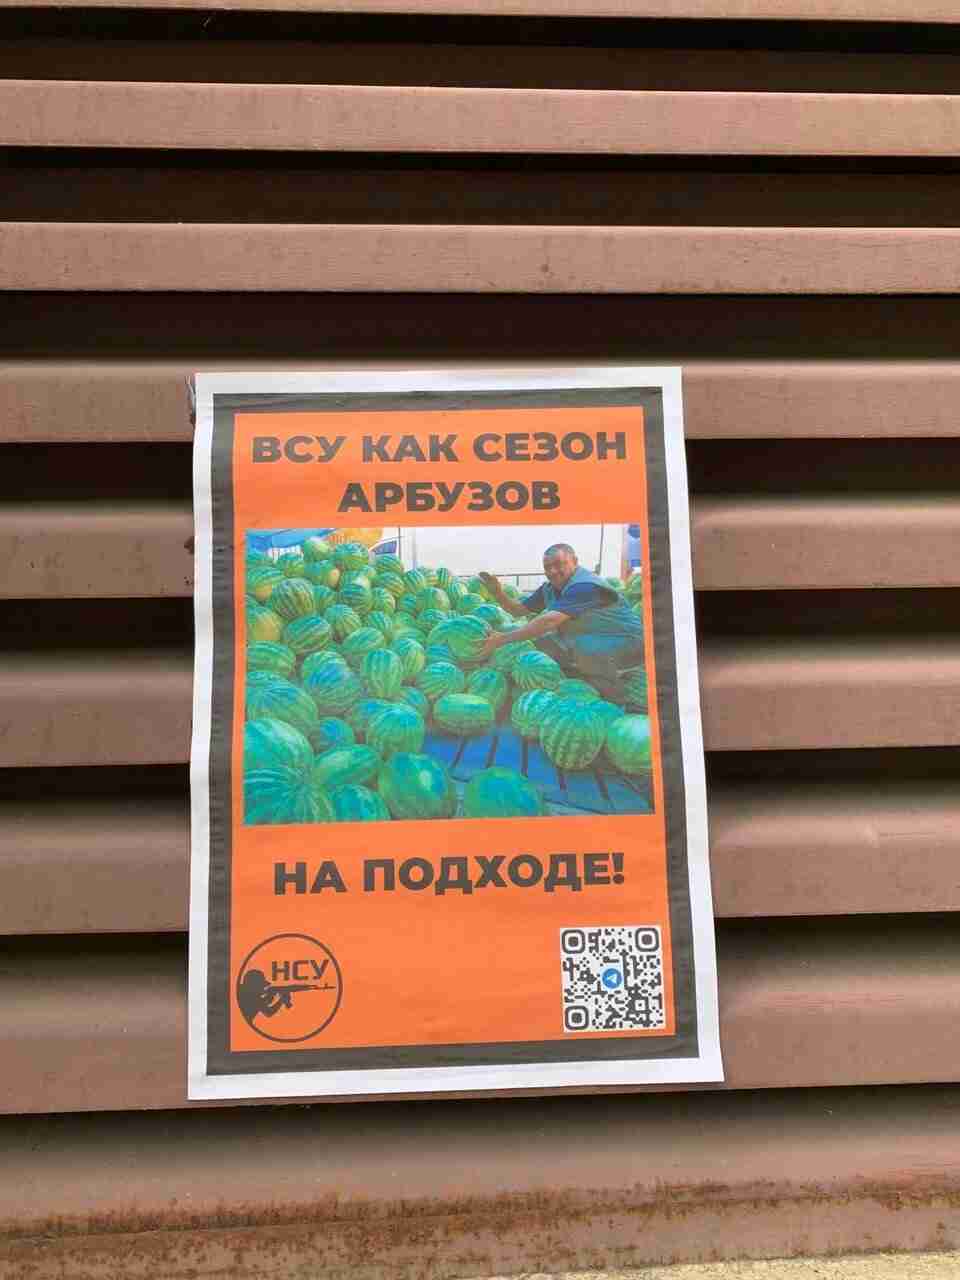 «ВСУ, як сезон кавунів - вже на підході!»: Херсон у партизанських листівках (ФОТО)